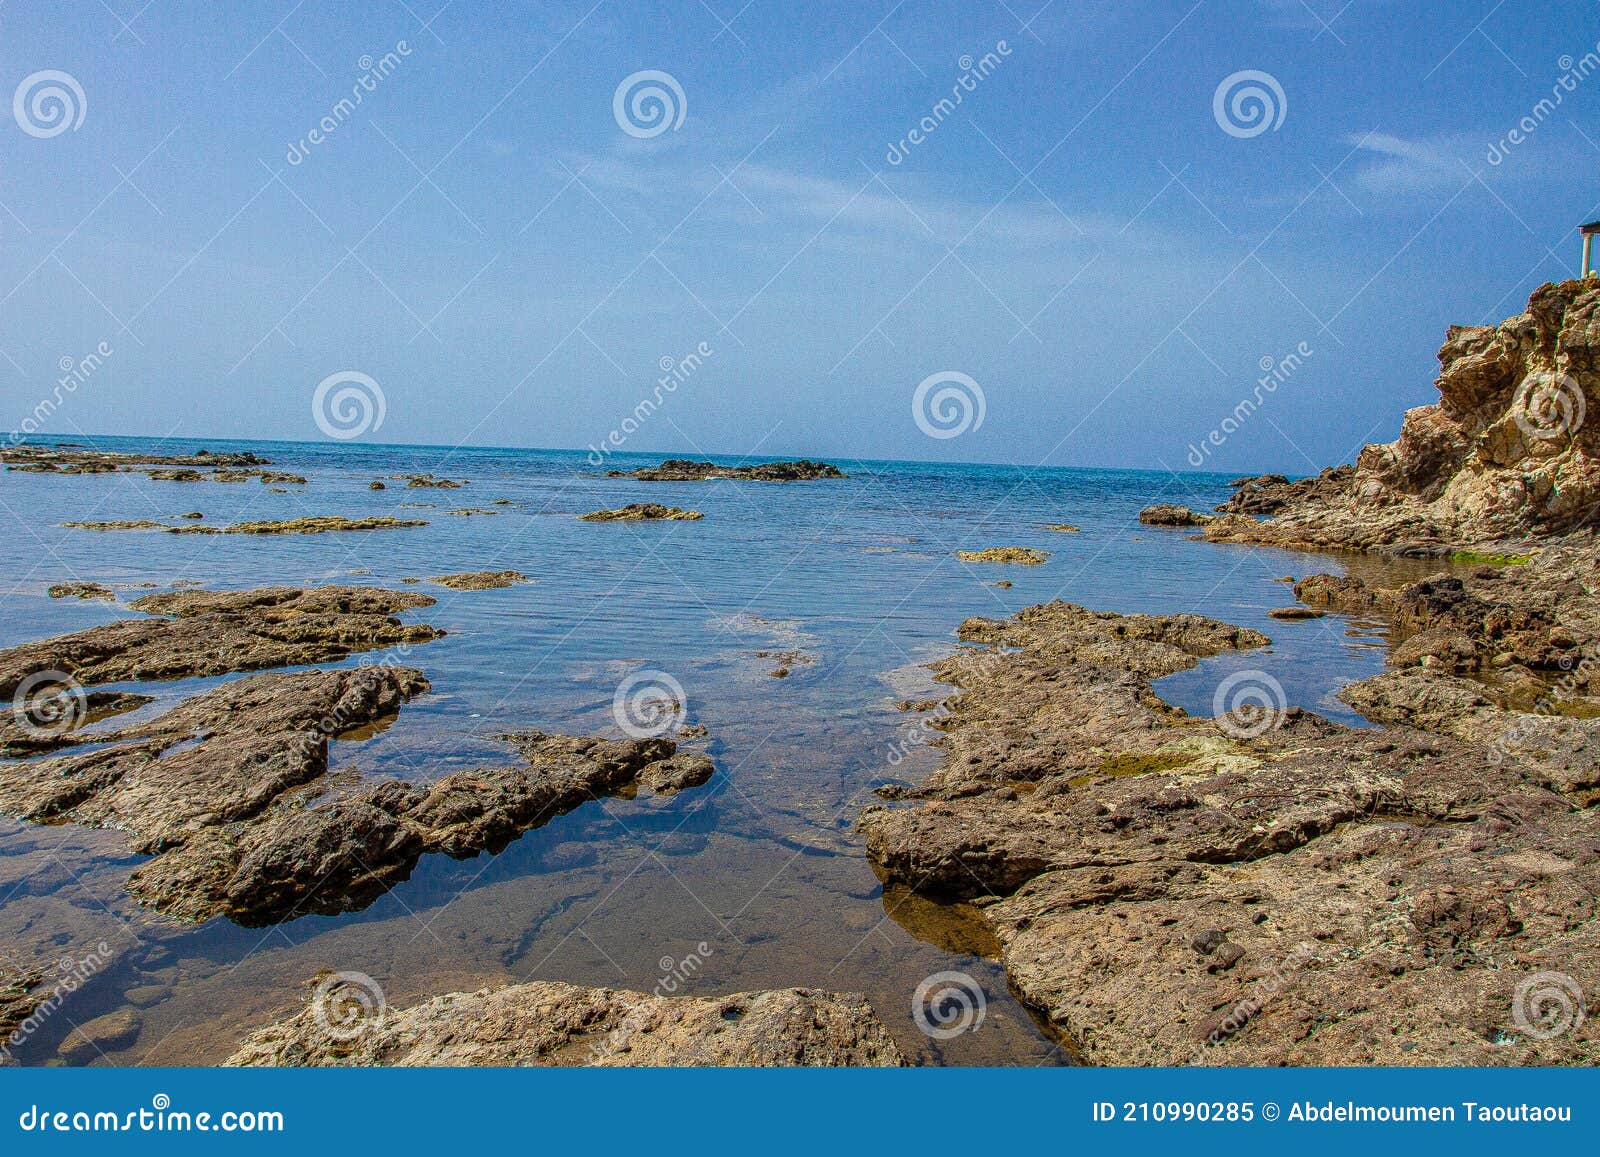 seaside in skikda county in algeria